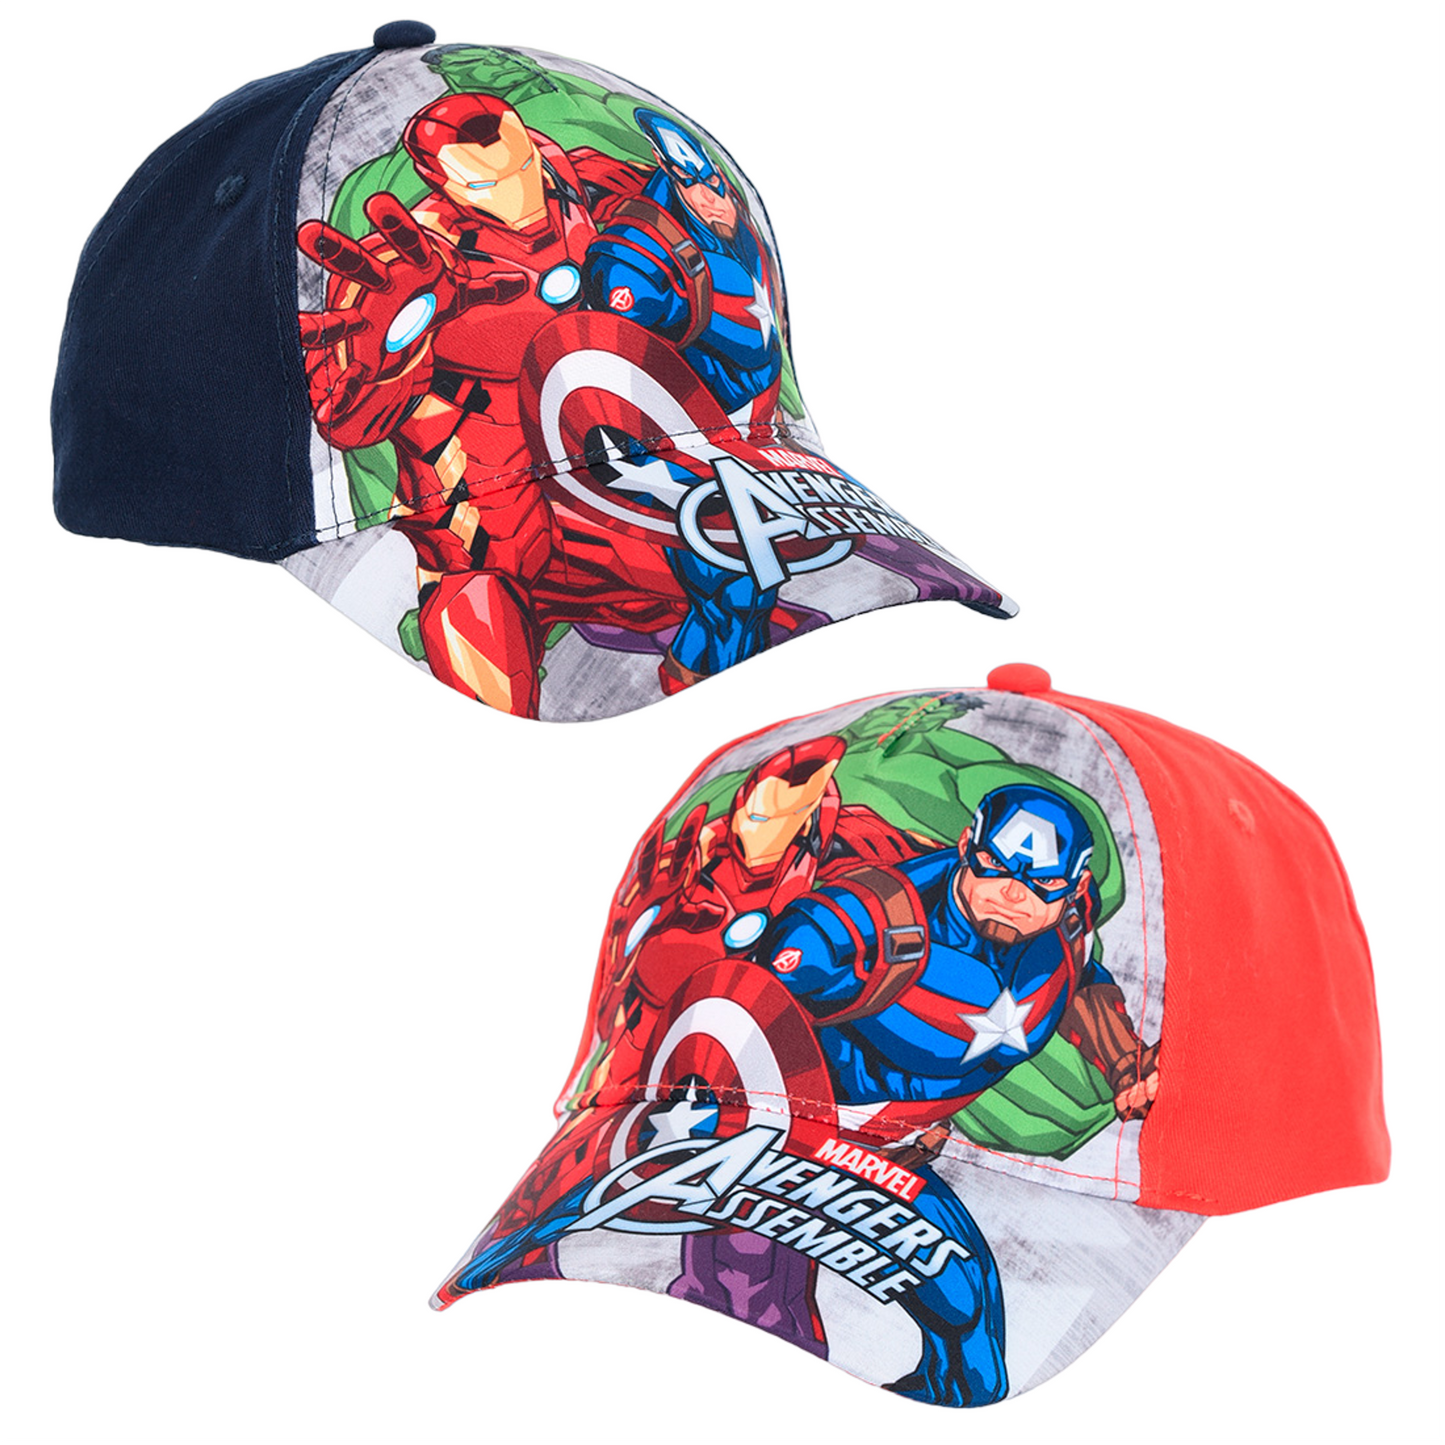 Marvel Avengers Assemble Baseball Cap